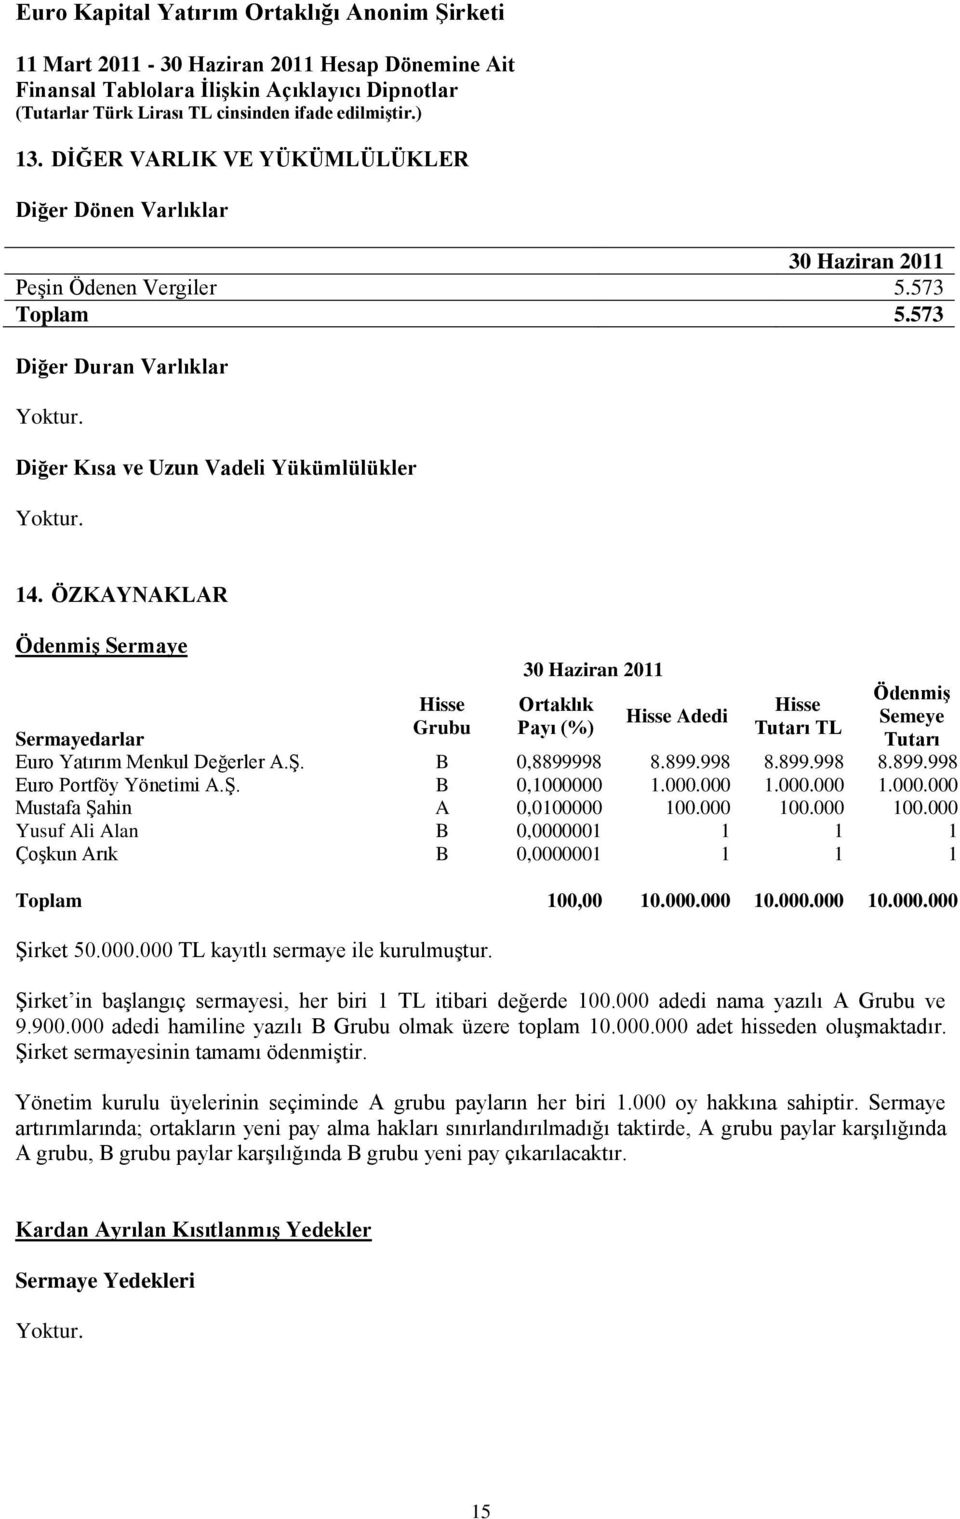 98 8.899.998 8.899.998 8.899.998 Euro Portföy Yönetimi A.Ş. B 0,1000000 1.000.000 1.000.000 1.000.000 Mustafa Şahin A 0,0100000 100.